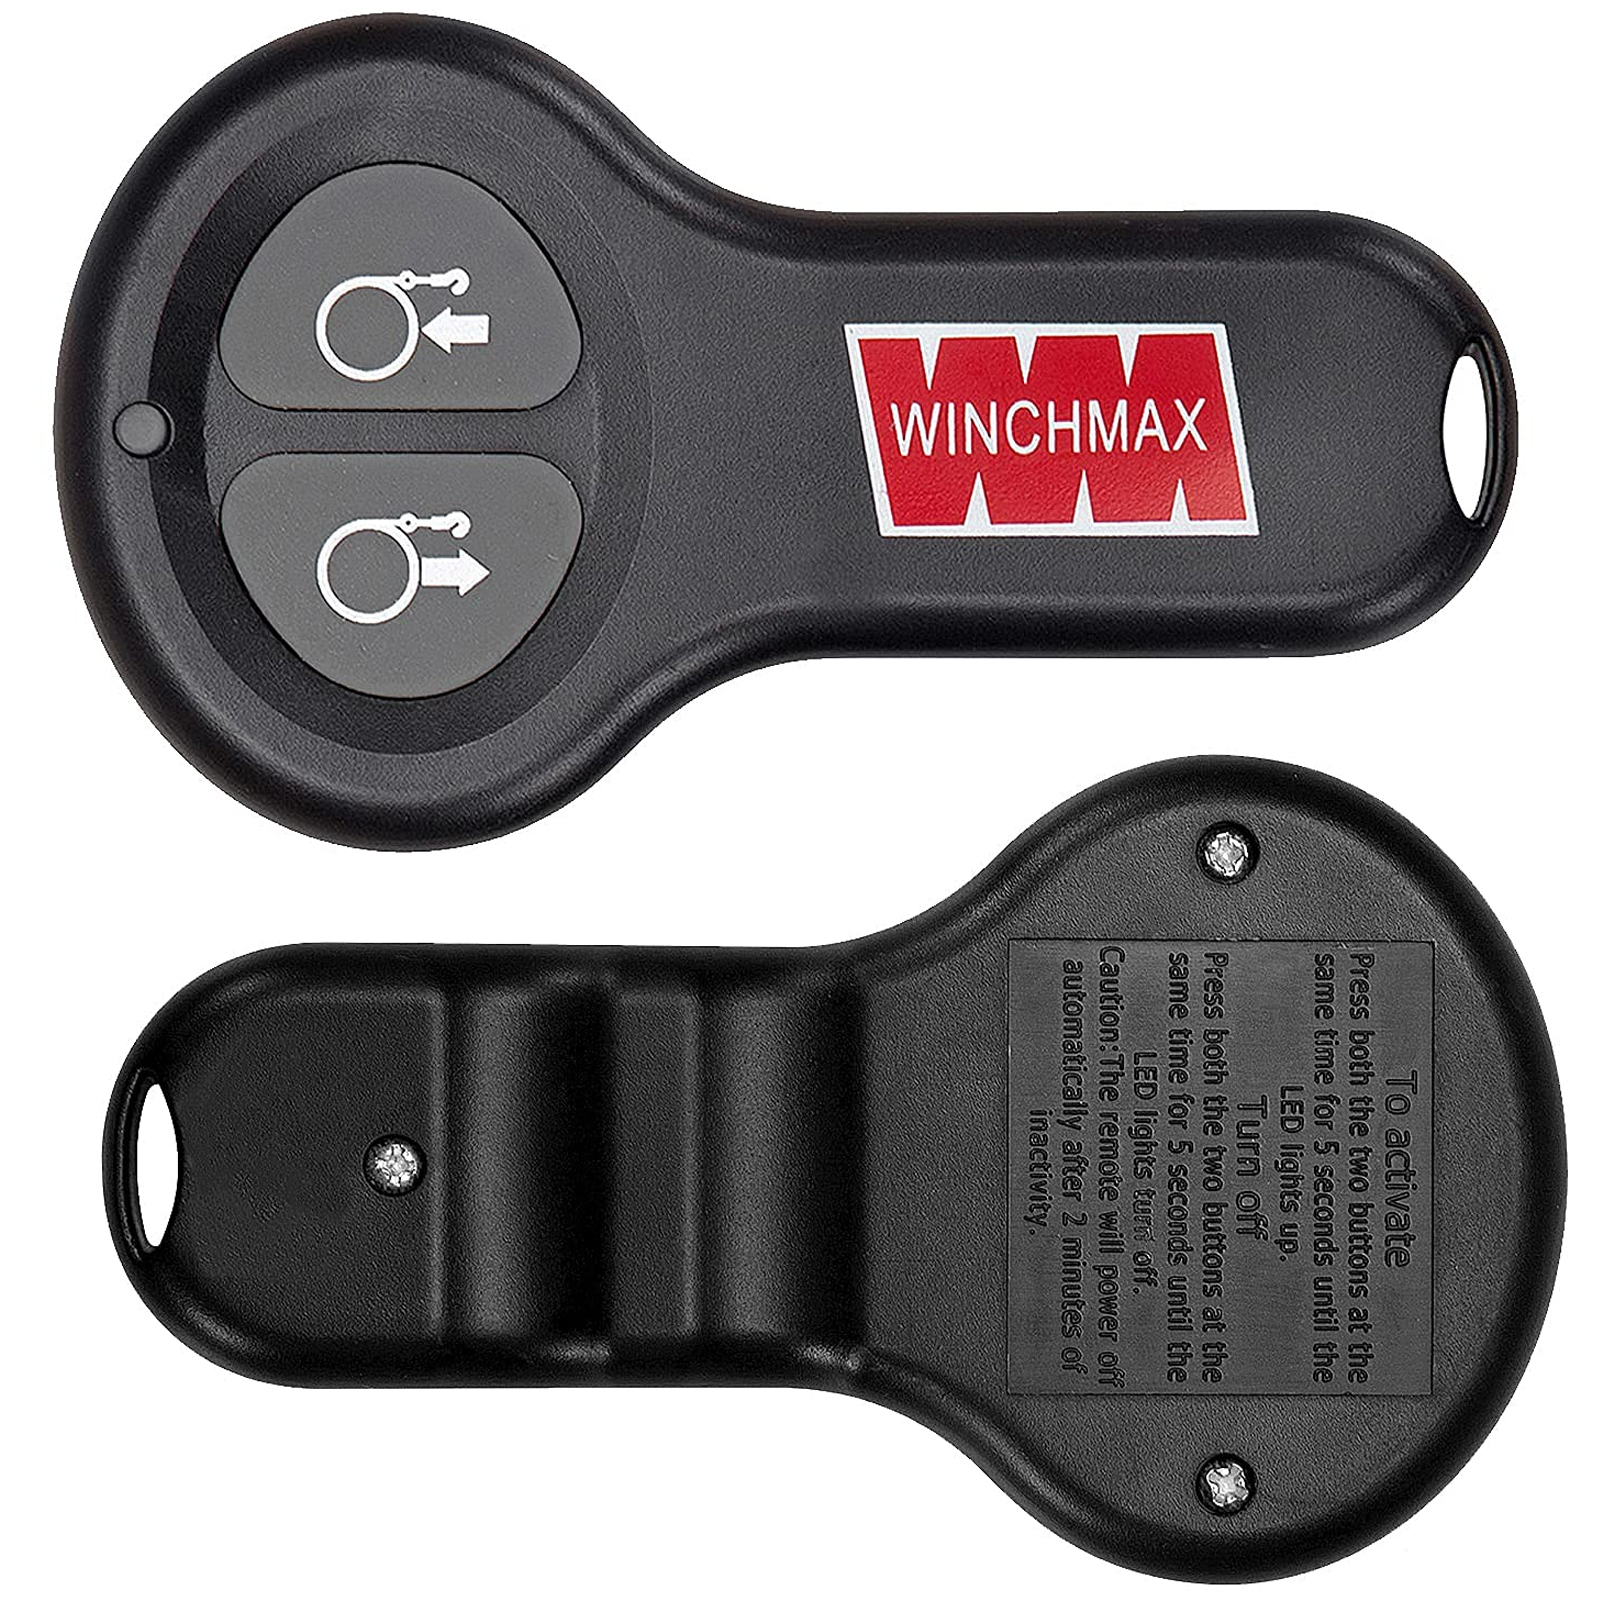 Winchmax Wireless Remote Controls